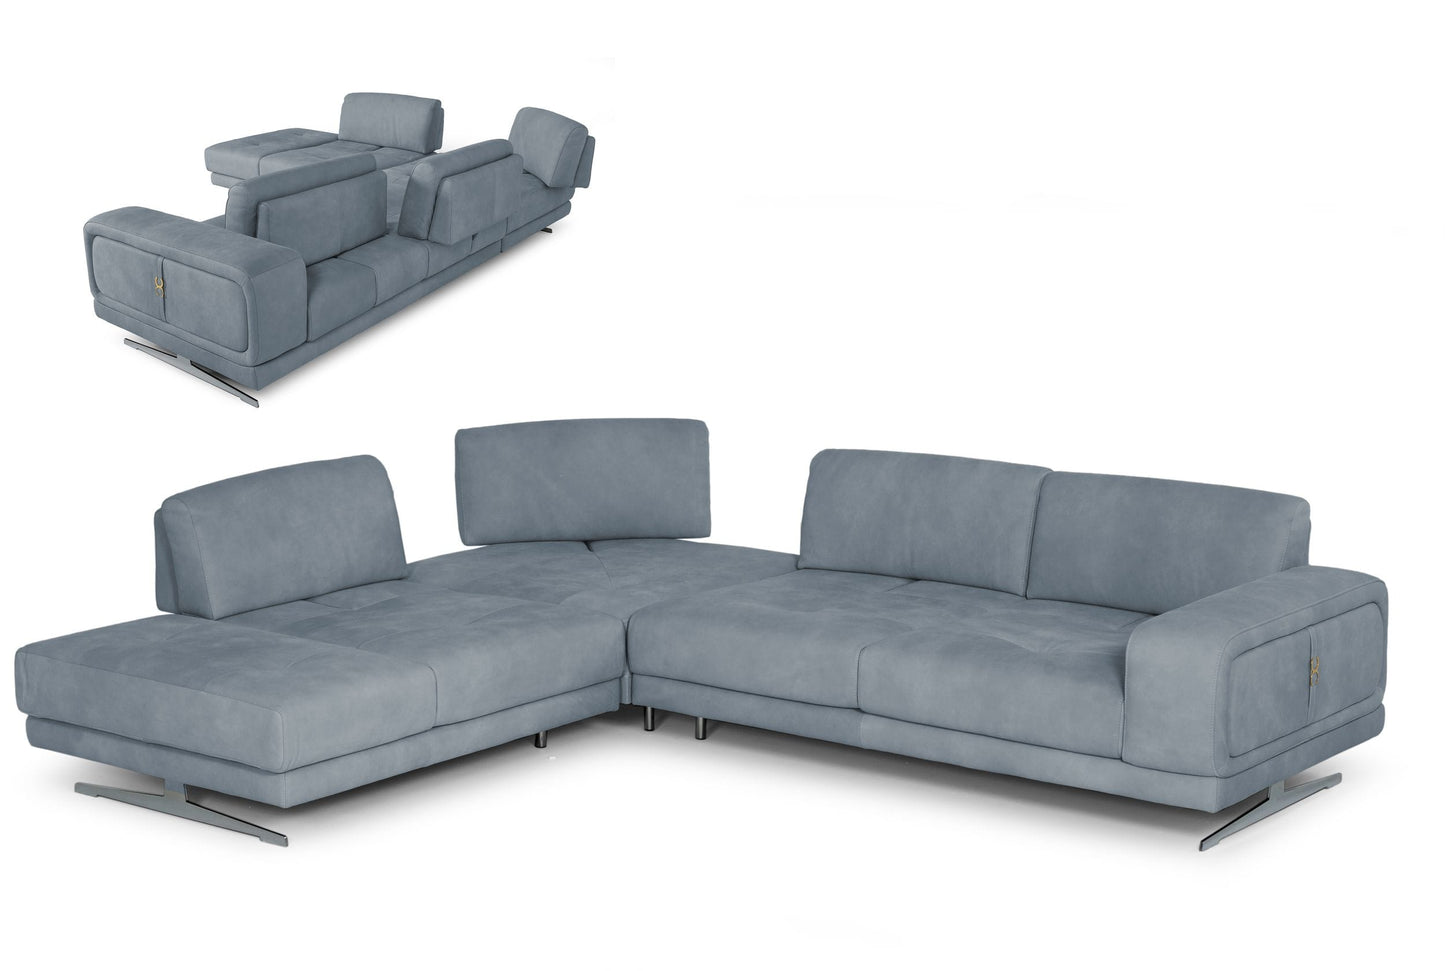 Coronelli Collezioni Mood - Contemporary Blue LAF Chaise Sectional Sofa-2